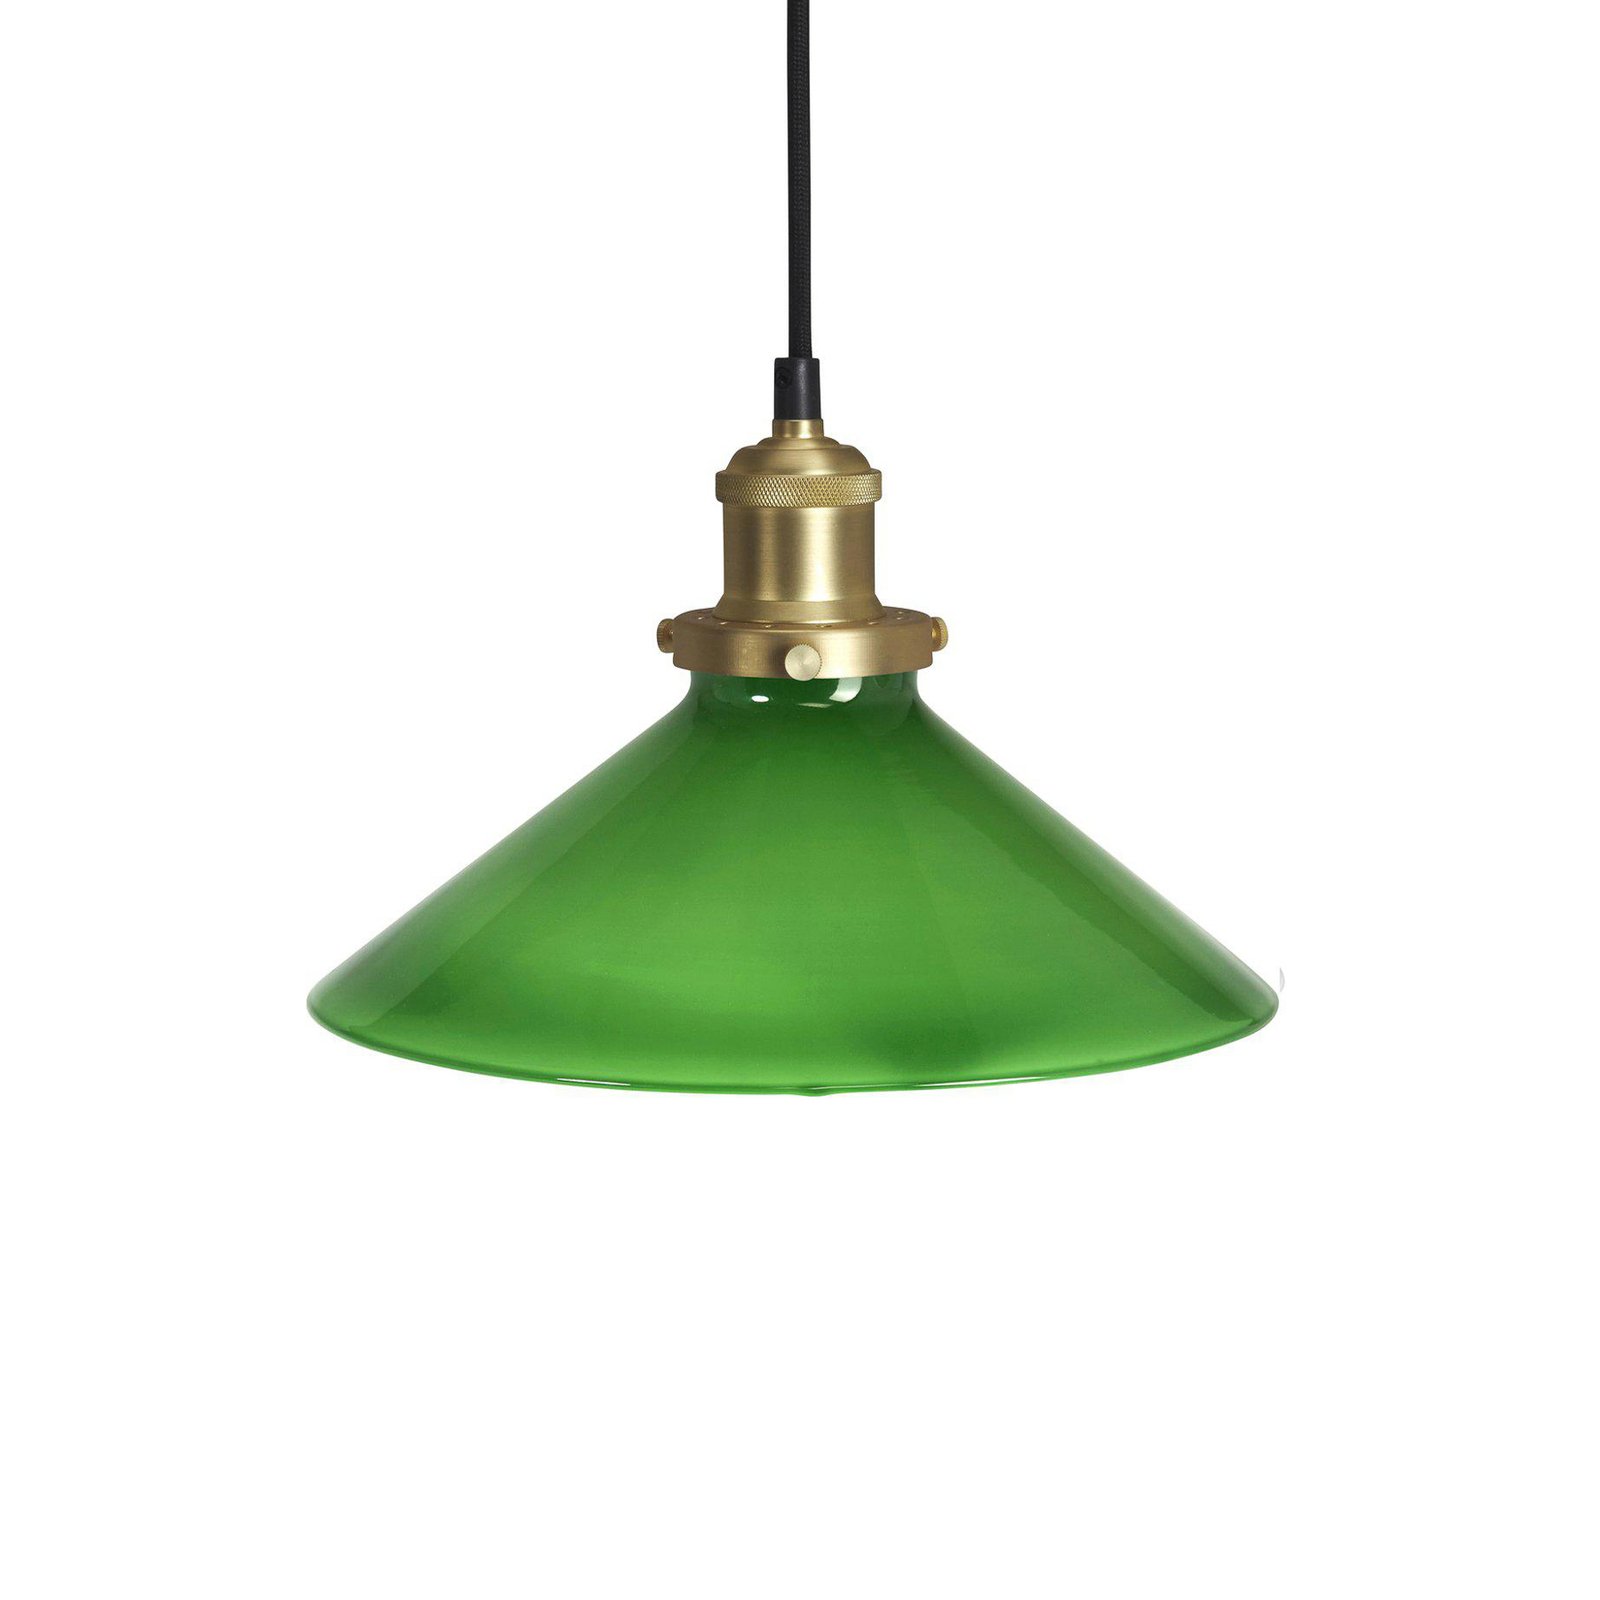 PR Home hanglamp August, groen, Ø 25 cm